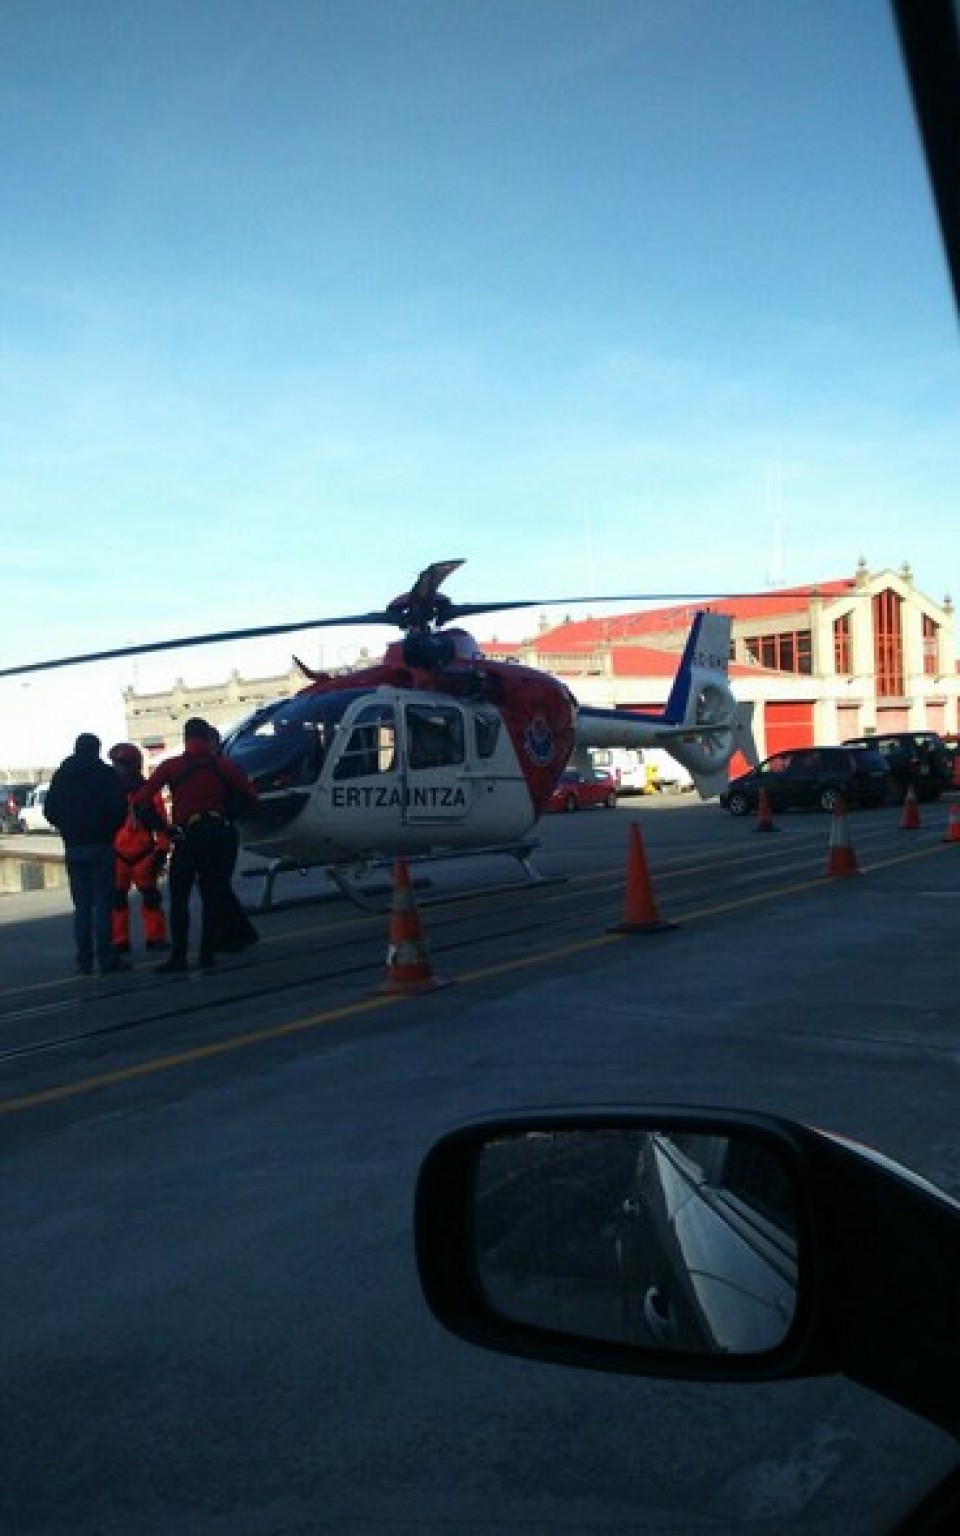 Ertzaintzaren helikoptero batek ebakuatu du hildako arrantzalearen gorpua. Argazkia: SOS Deiak